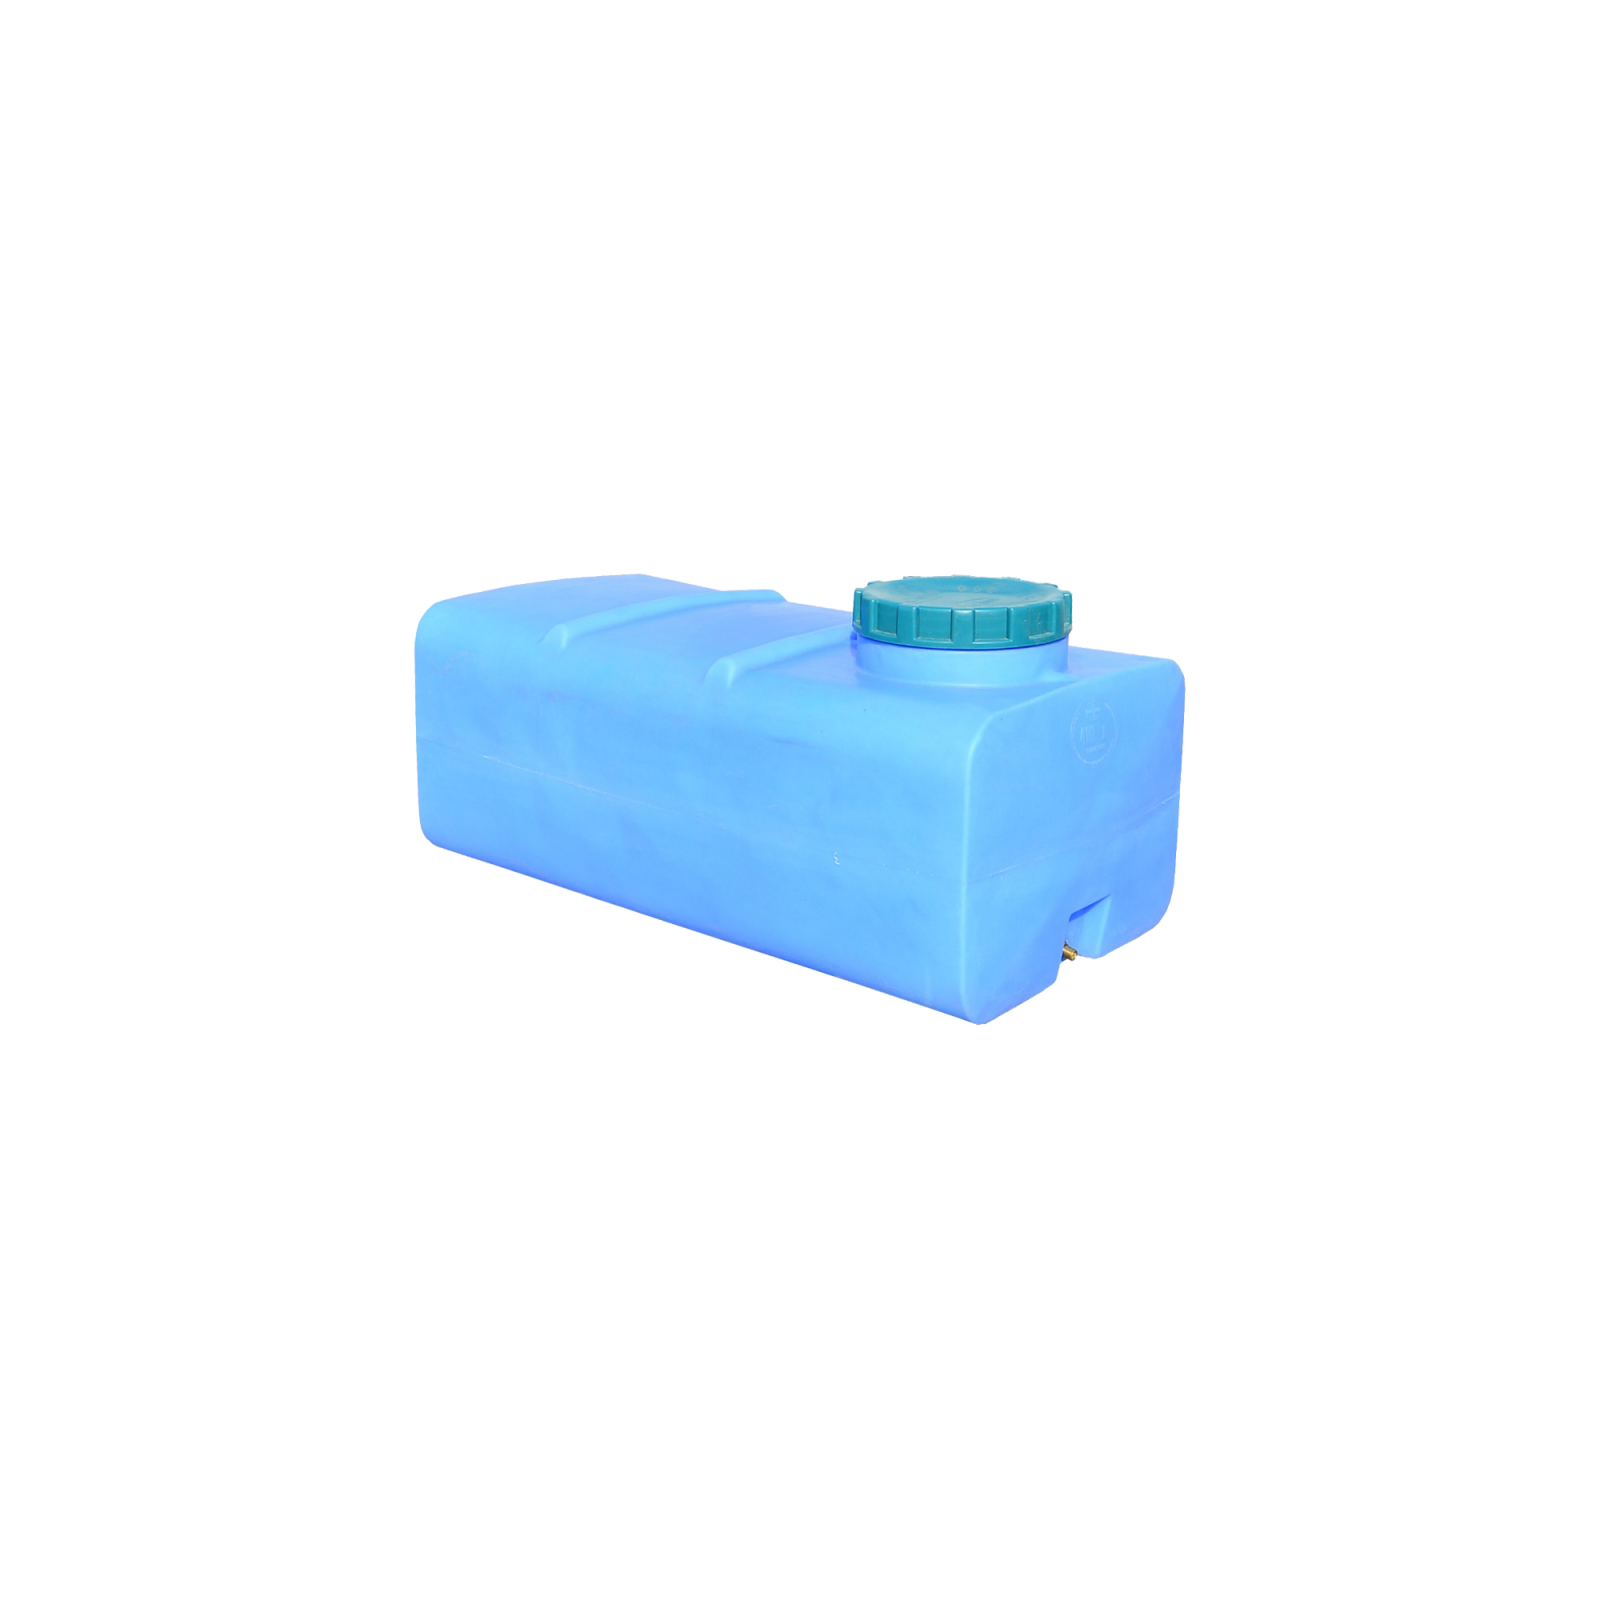 Емкость для воды Пласт Бак квадратная пищевая 500 л прямоугольная синяя (12457)